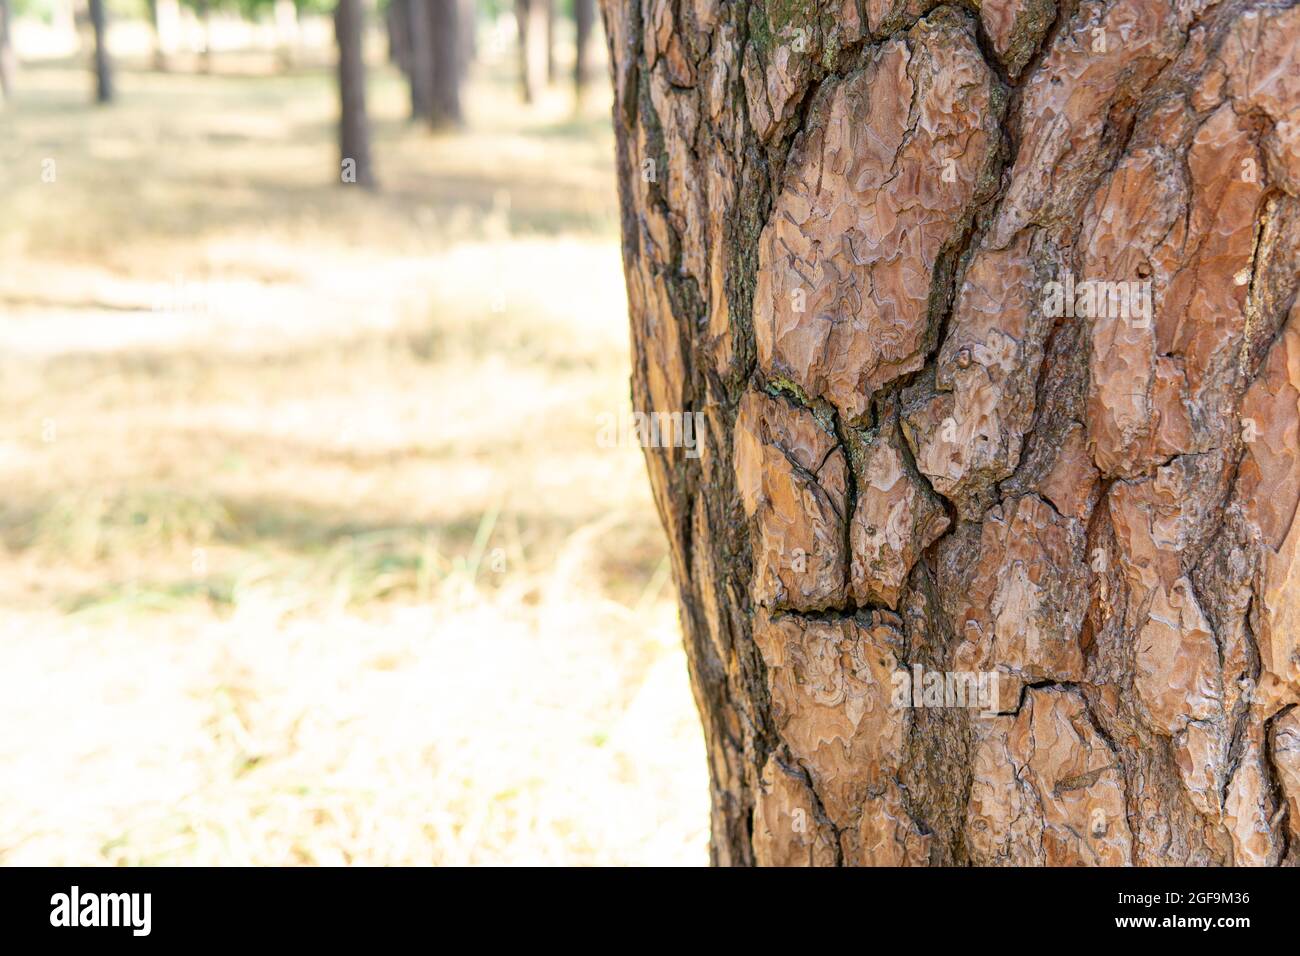 Schnittansicht eines Baumstamms mit einem Rindenmuster, das einem menschlichen Gesicht ähnelt Stockfoto